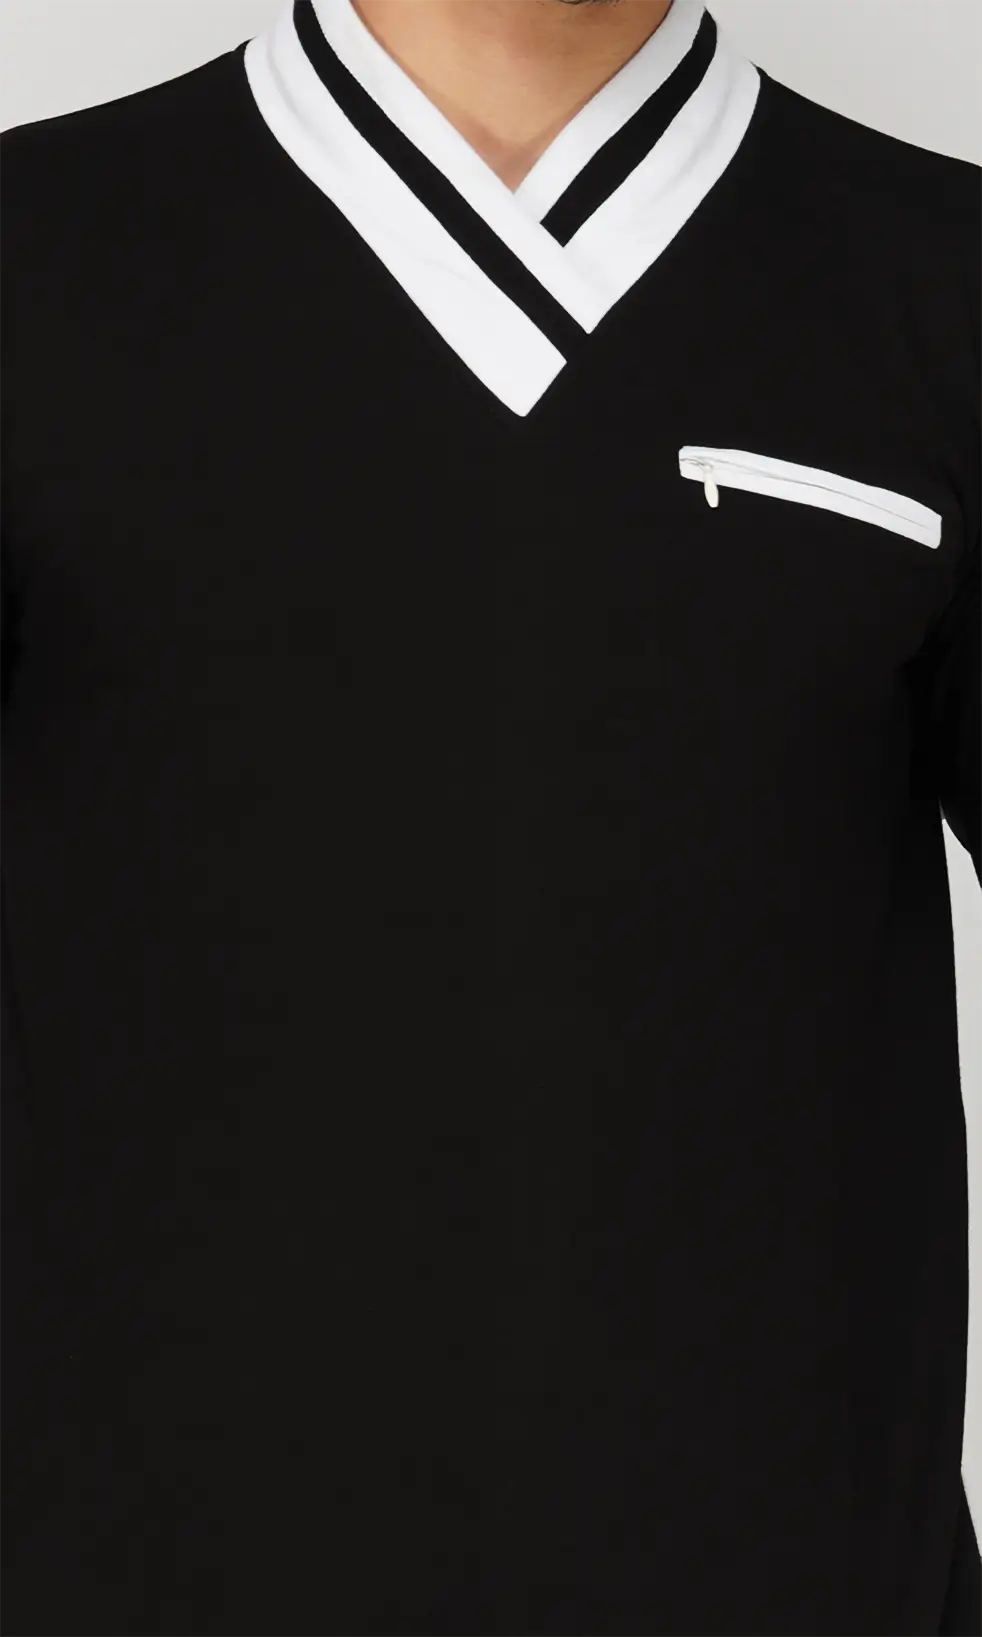 Mebadass Men's Fullsleeve Colorblocked Regular Size T-shirt - Black White